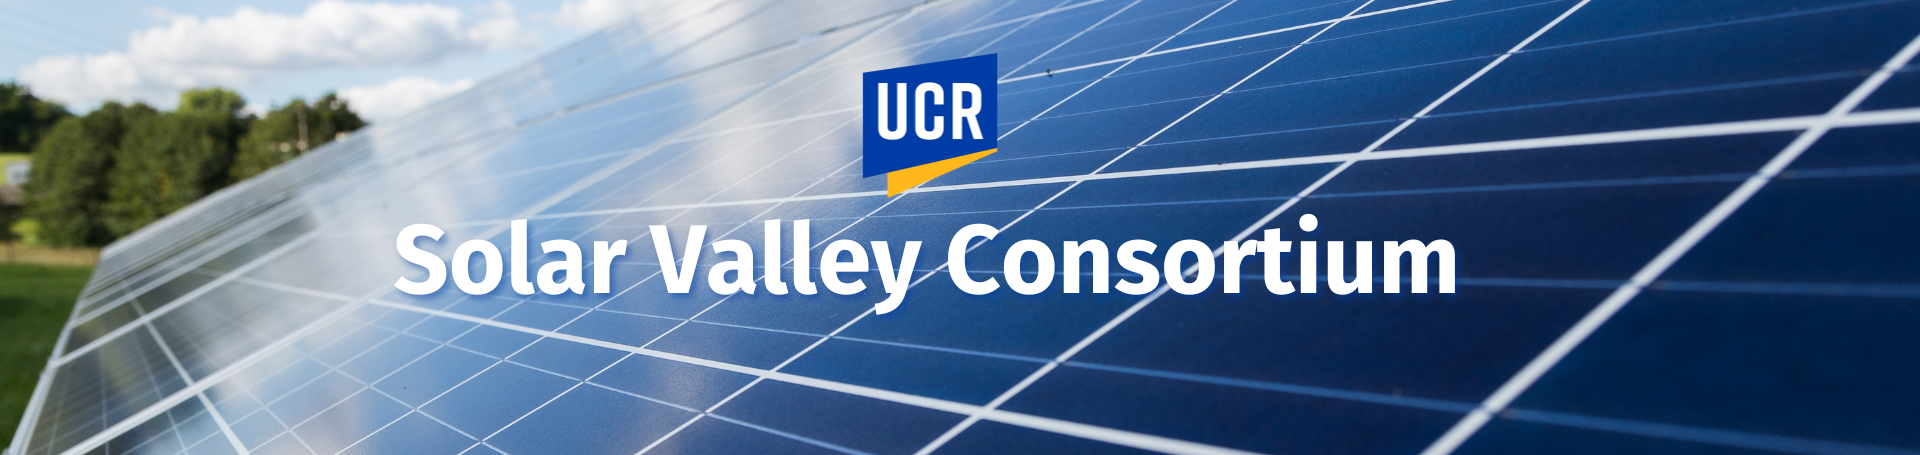 solar valley consortium